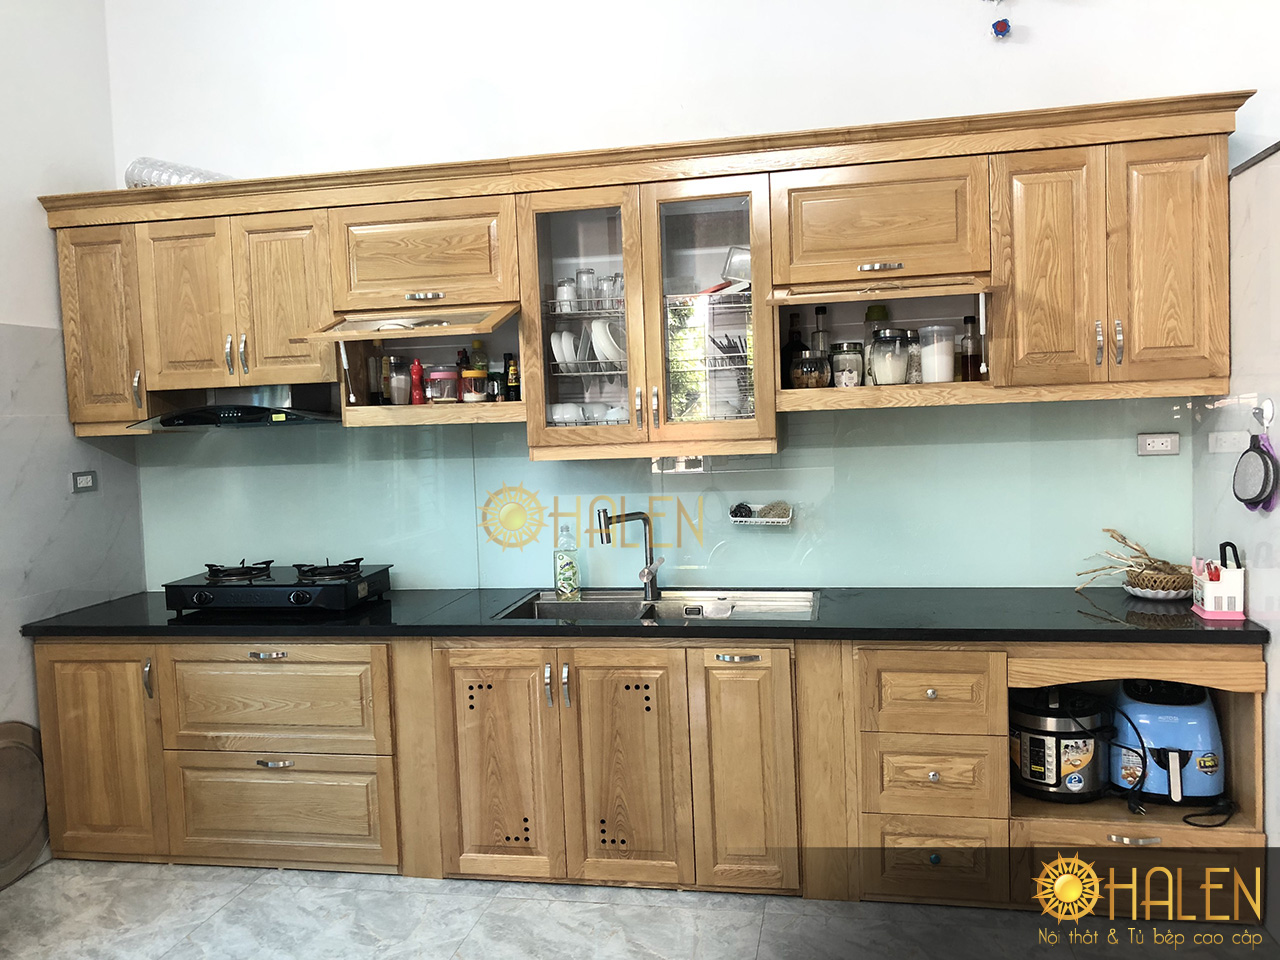 Tủ bếp sồi vàng nhạt kết hợp kính bếp màu tắng xanh nhẹ nhàng, thu hút mọi ánh nhìn